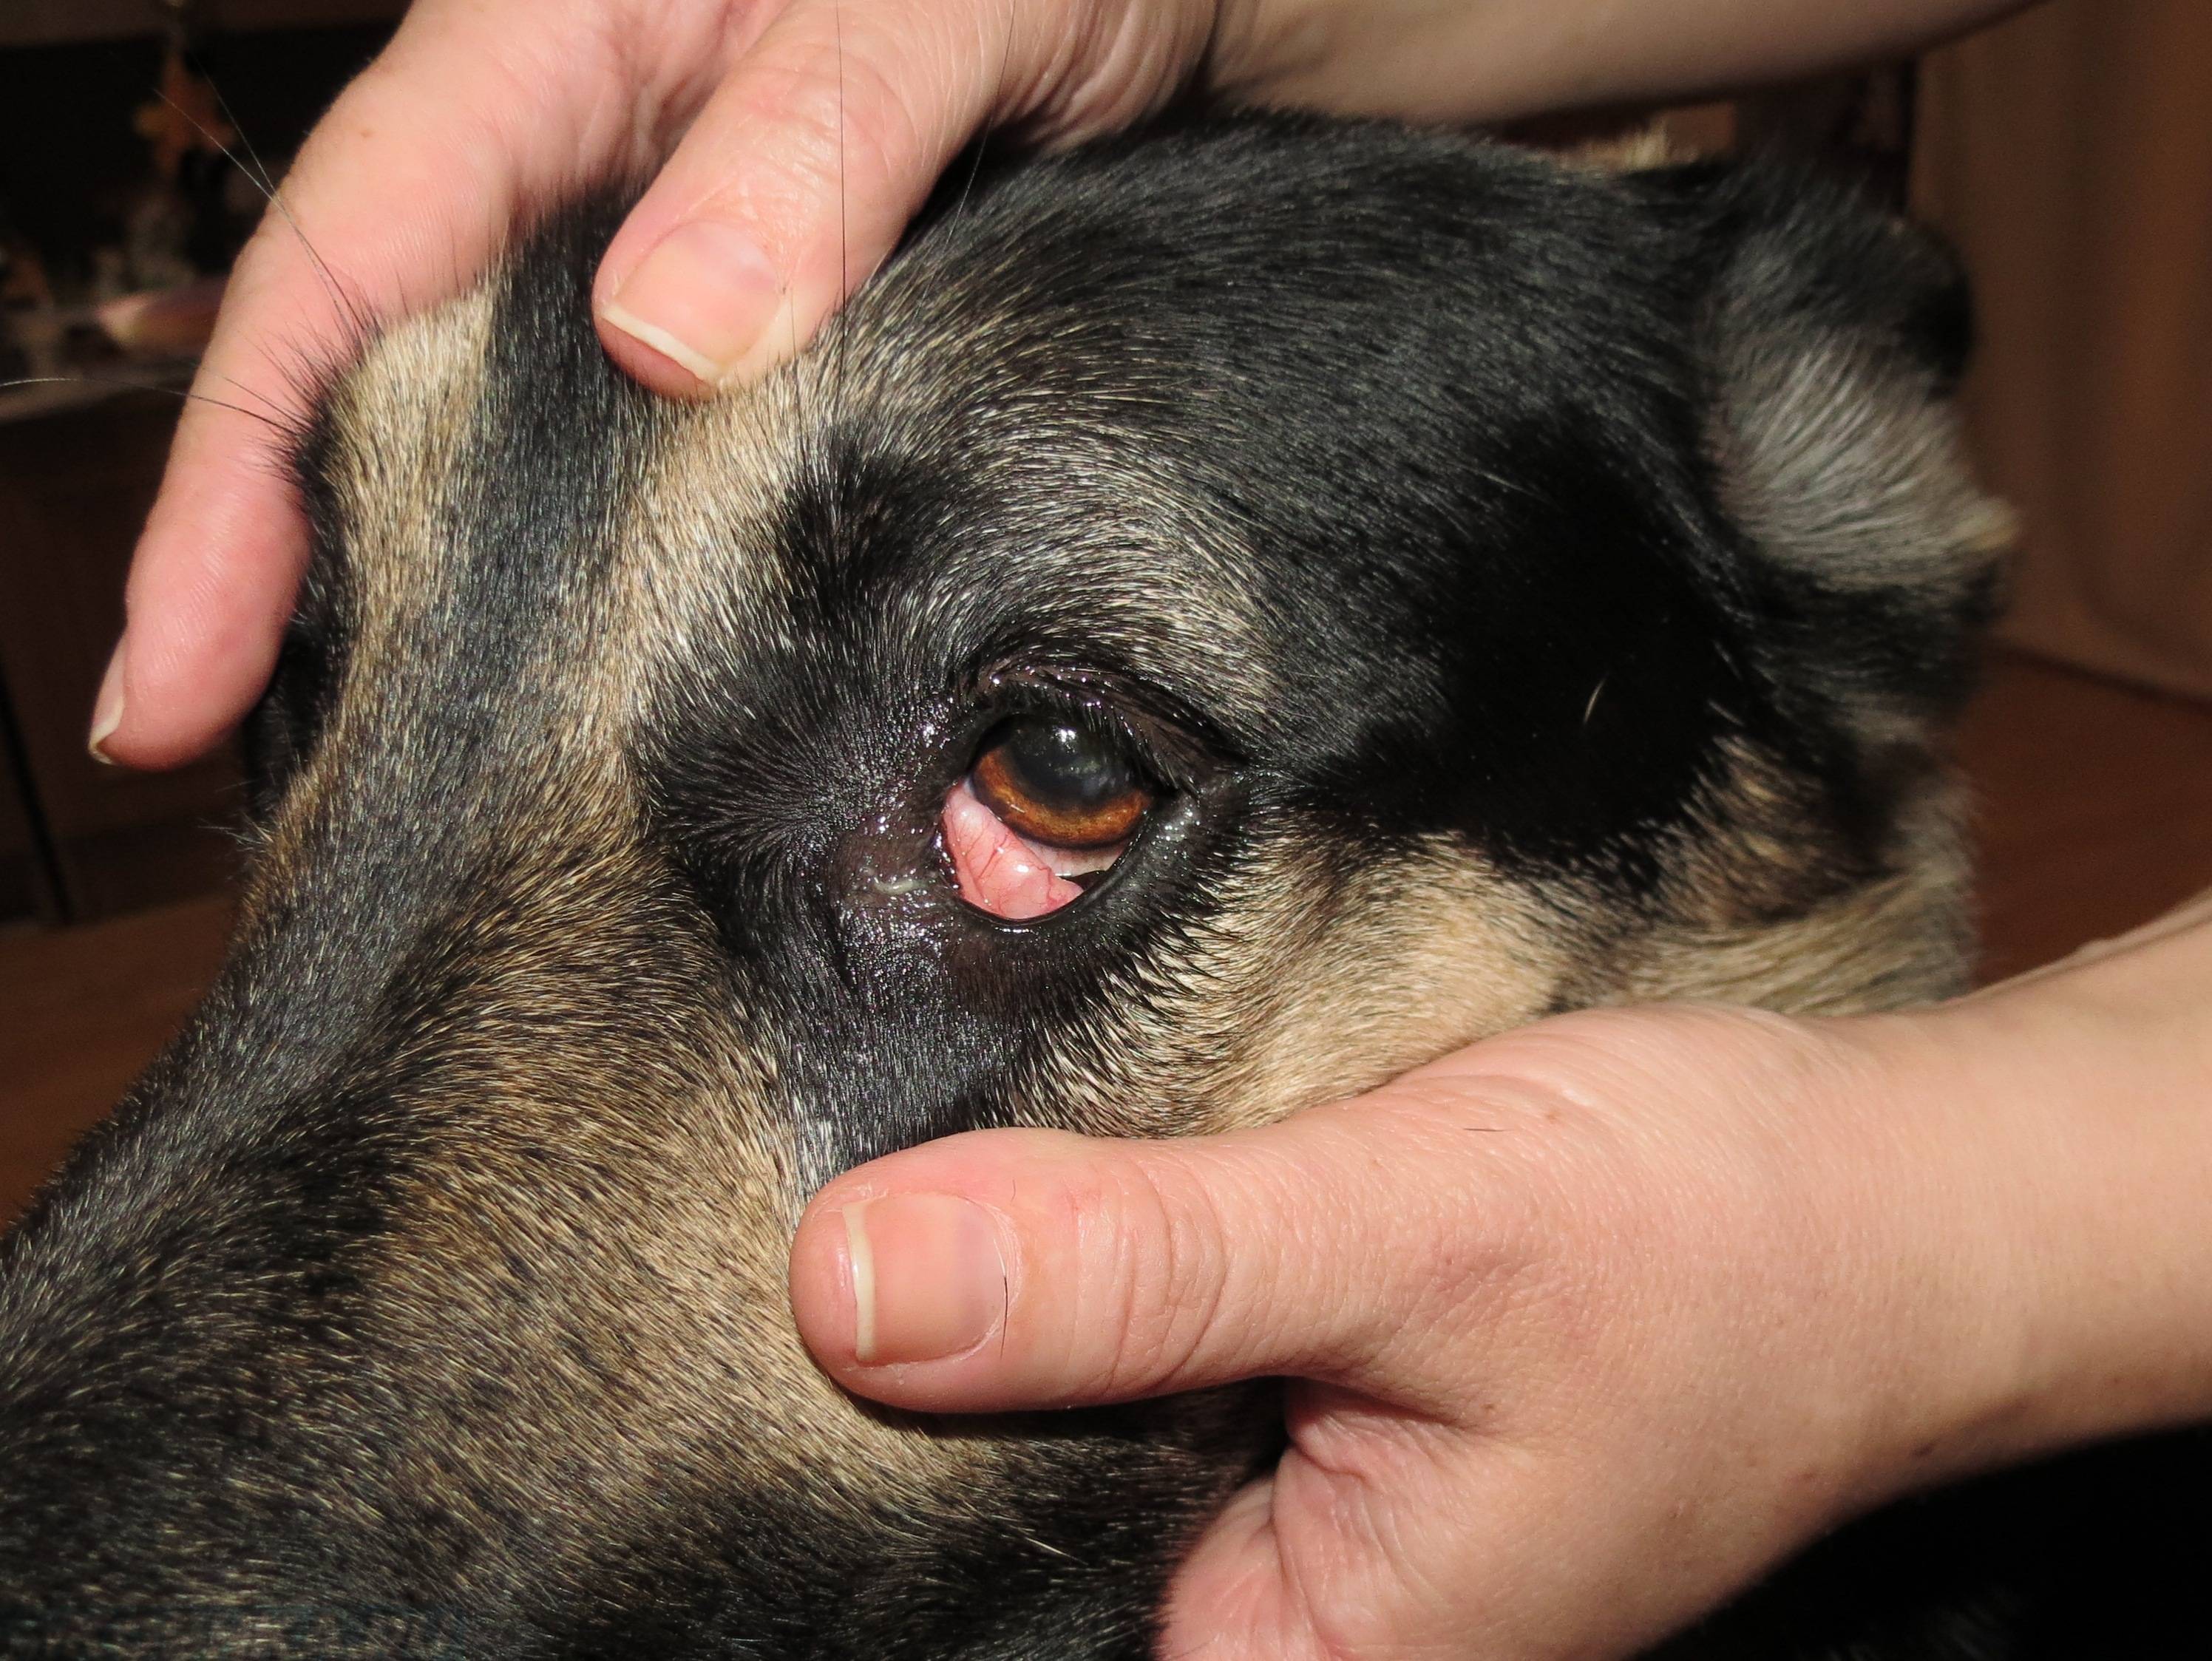 Диагностика слезотечения у животных в клиниках беларуси